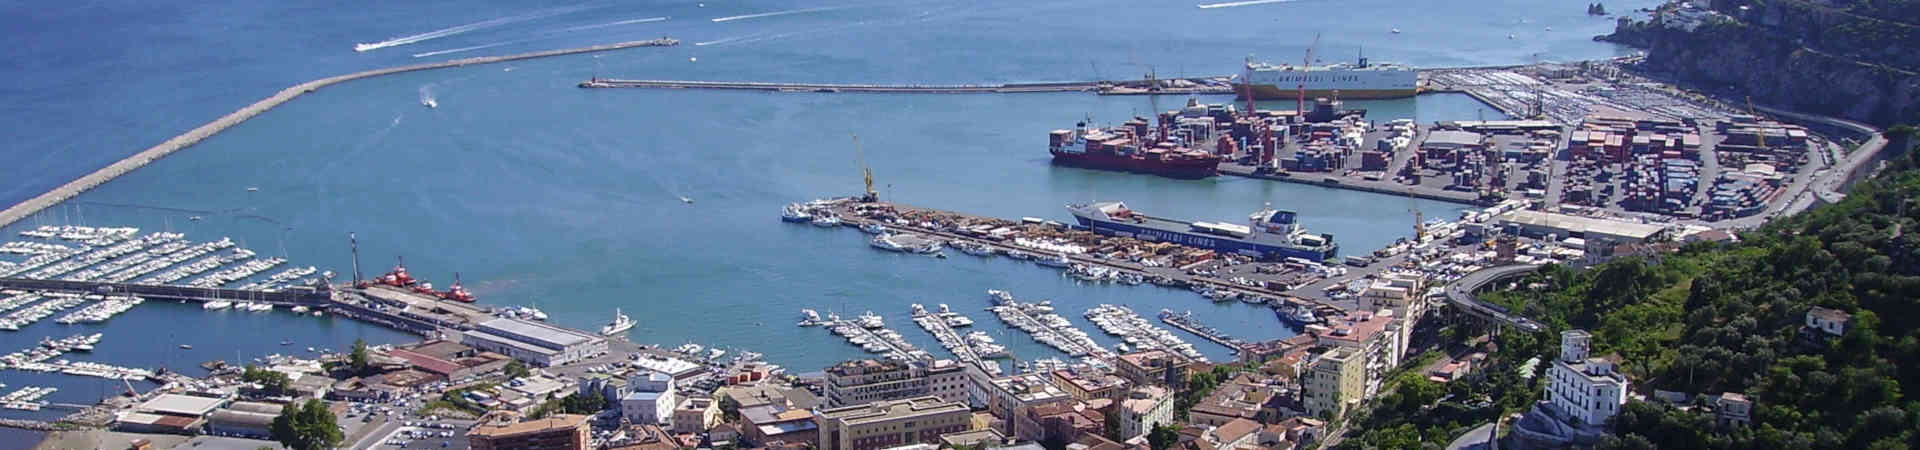 Imagen recurso del puerto de destino Salerno para la ruta en ferry Malta - Salerno